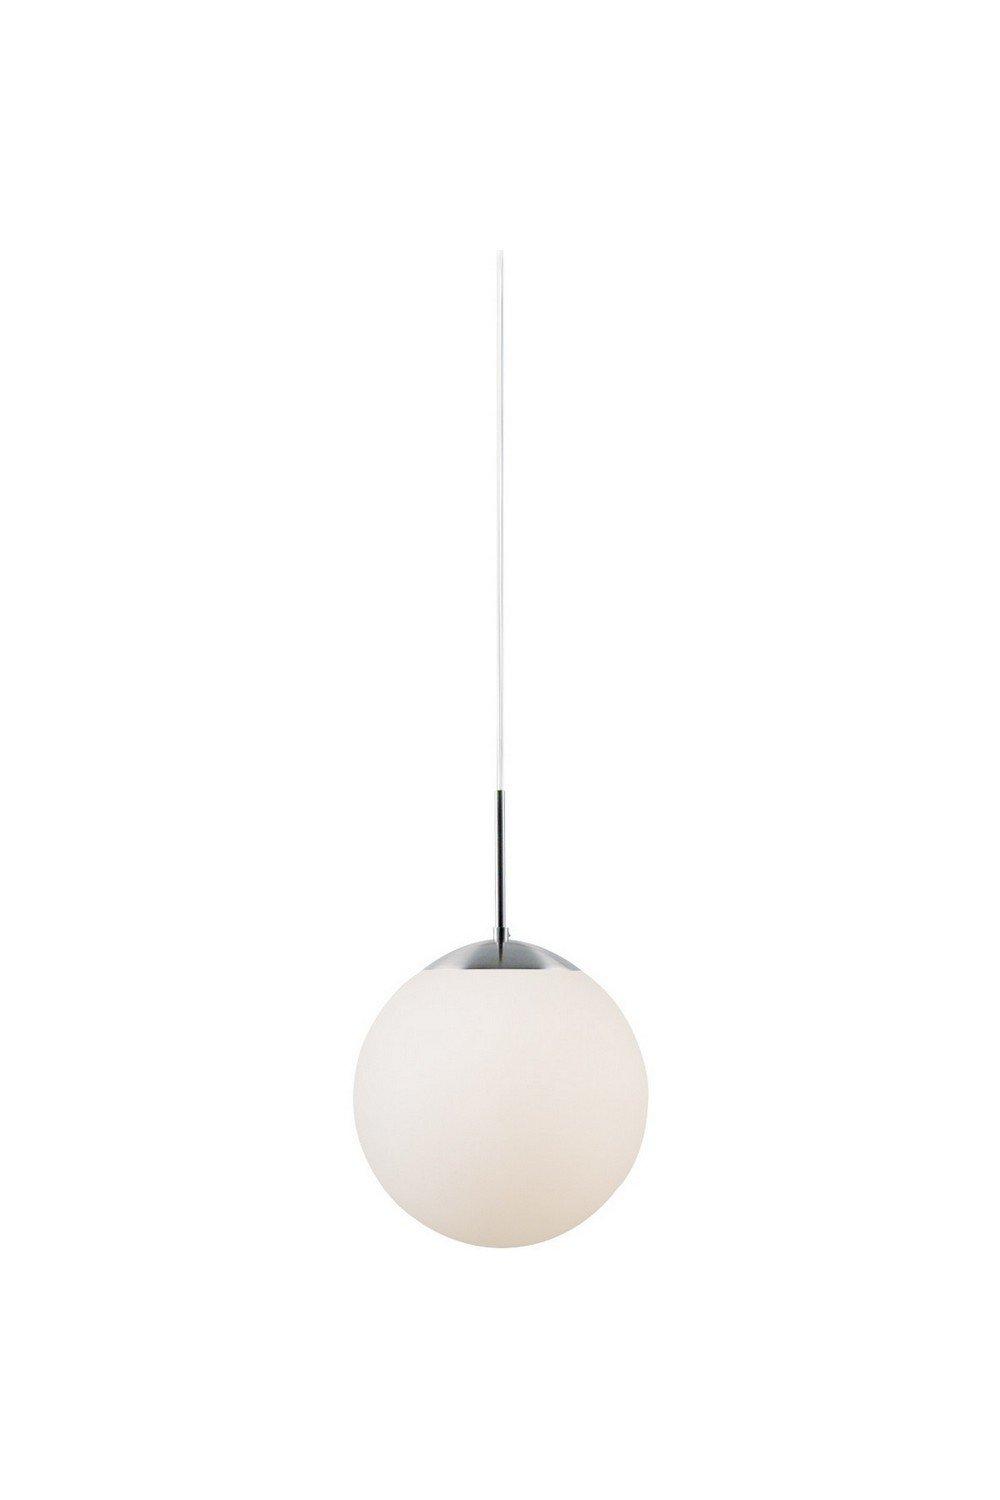 Cafe 15cm Globe Pendant Ceiling Light White E27